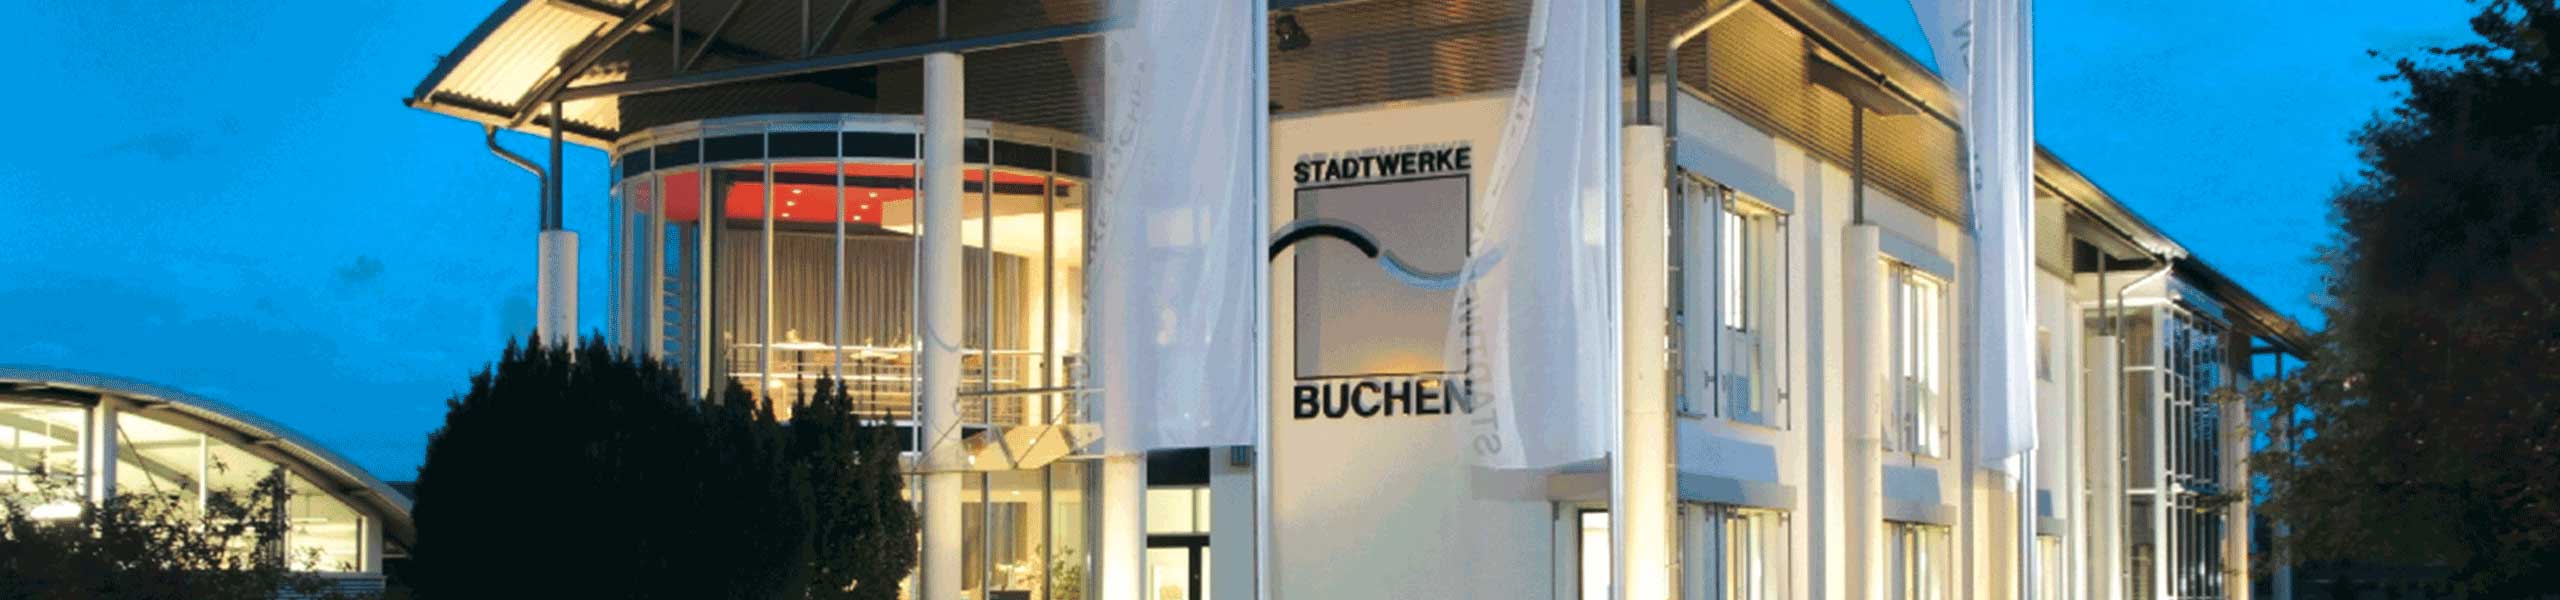 Stadtwerke Buchen GmbH & Co KG - Ihr Versorger vor Ort - Telekommunikation